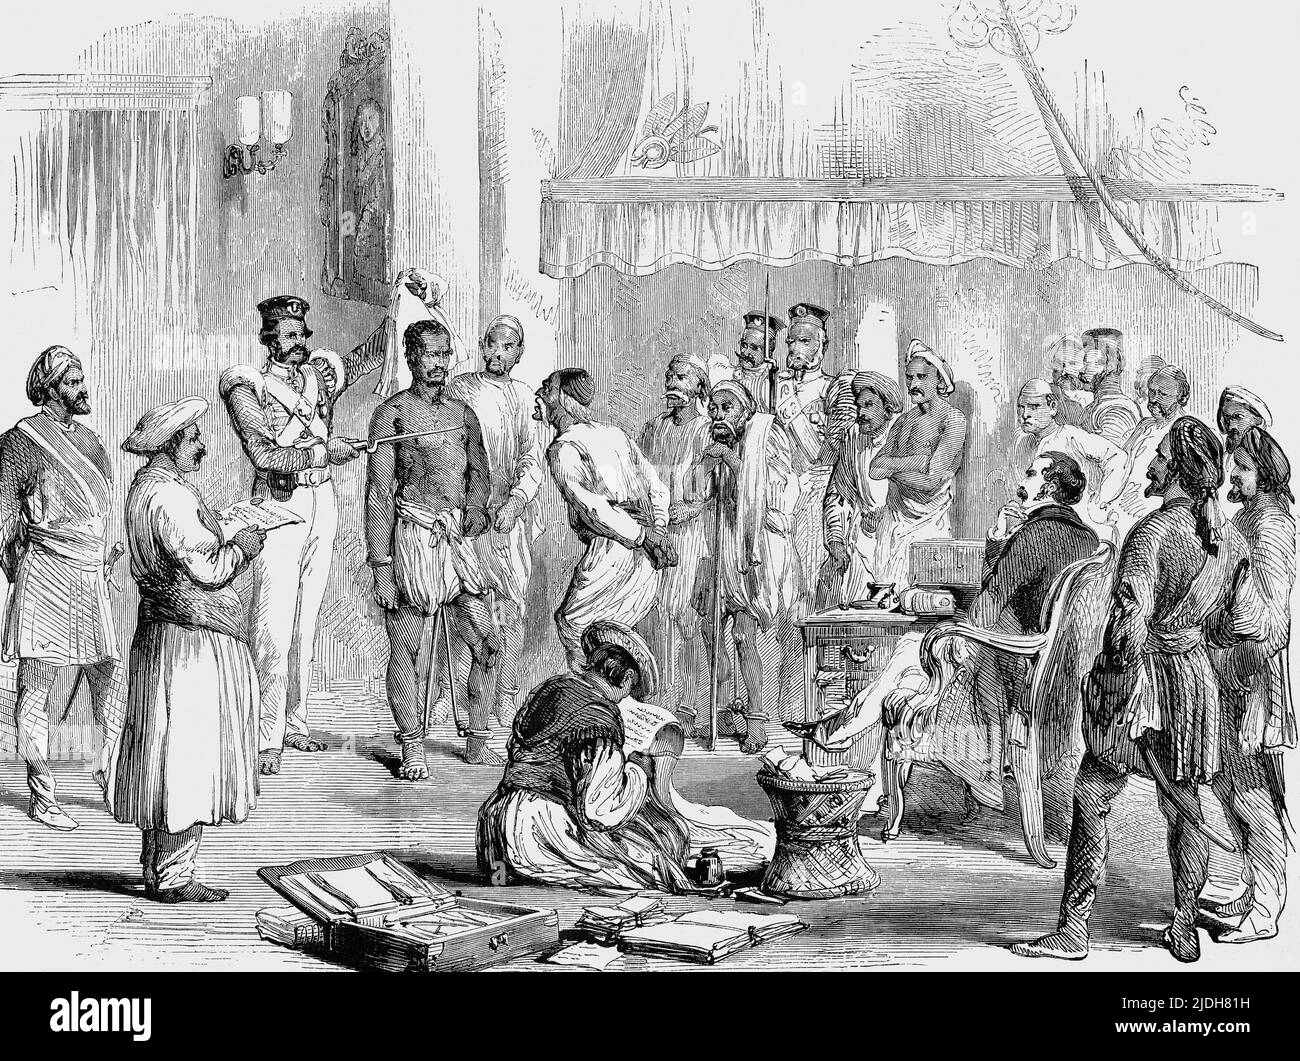 Cutchery (Gericht) des Magistrats in Awadh oder Oudh 1853. Ein indischer Gefangener in Eisen, der der Vergiftung beschuldigt wird, wird vor einen englischen Richter gebracht. Aus L'Univers Illustre, Paris, 1859 Stockfoto